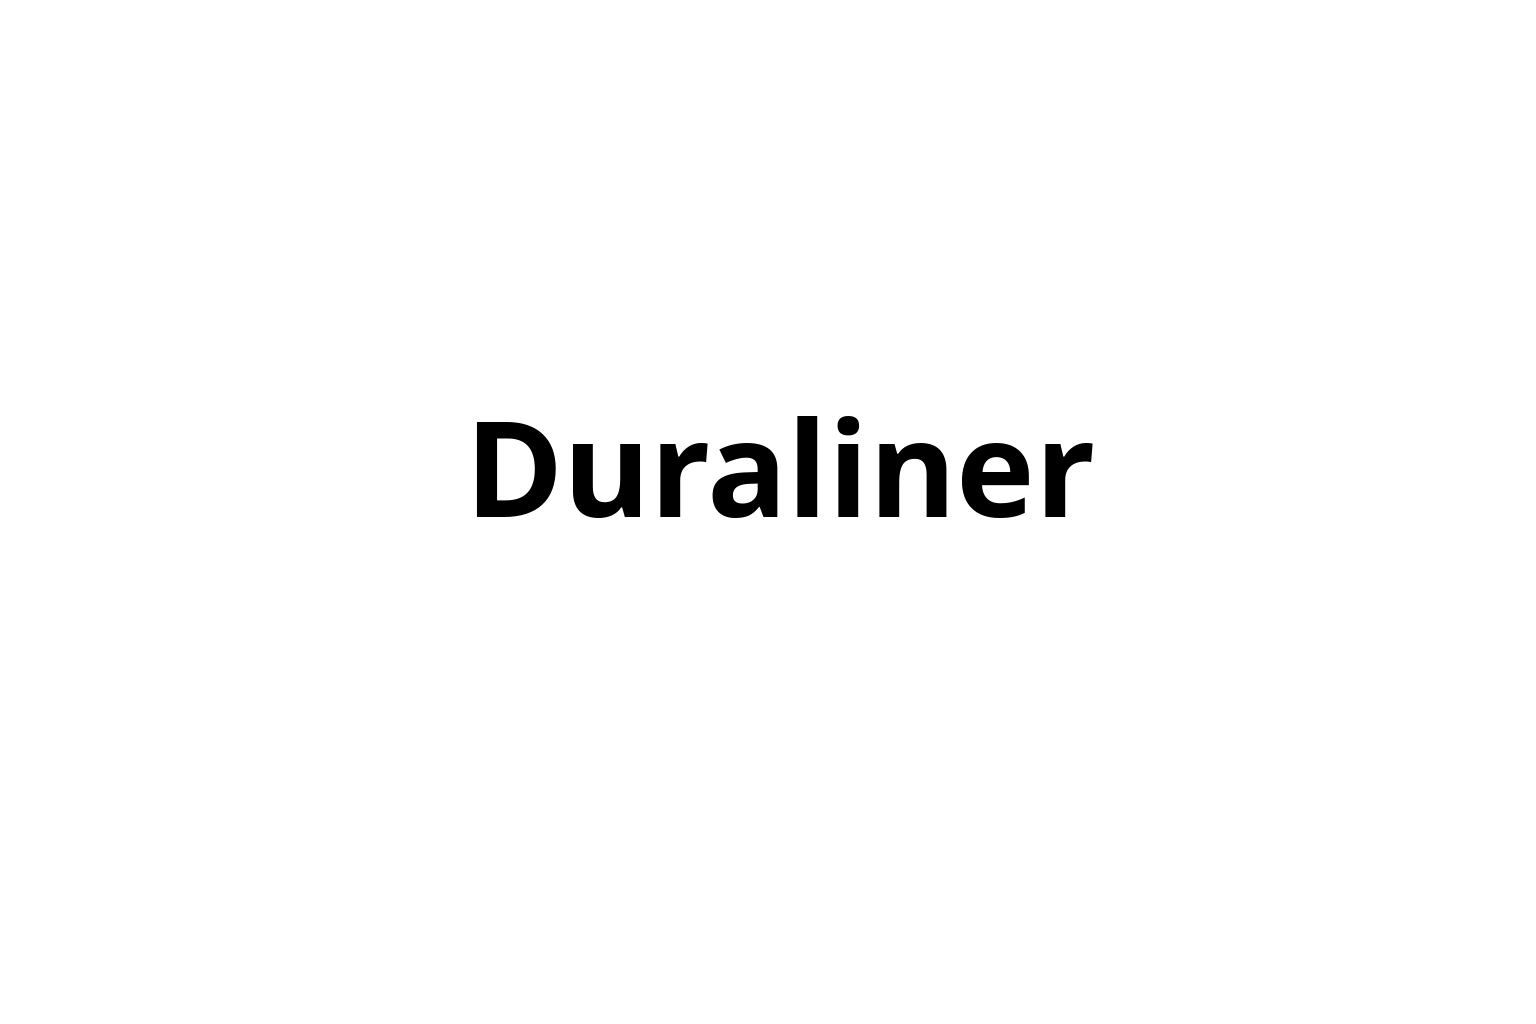 Duraliner